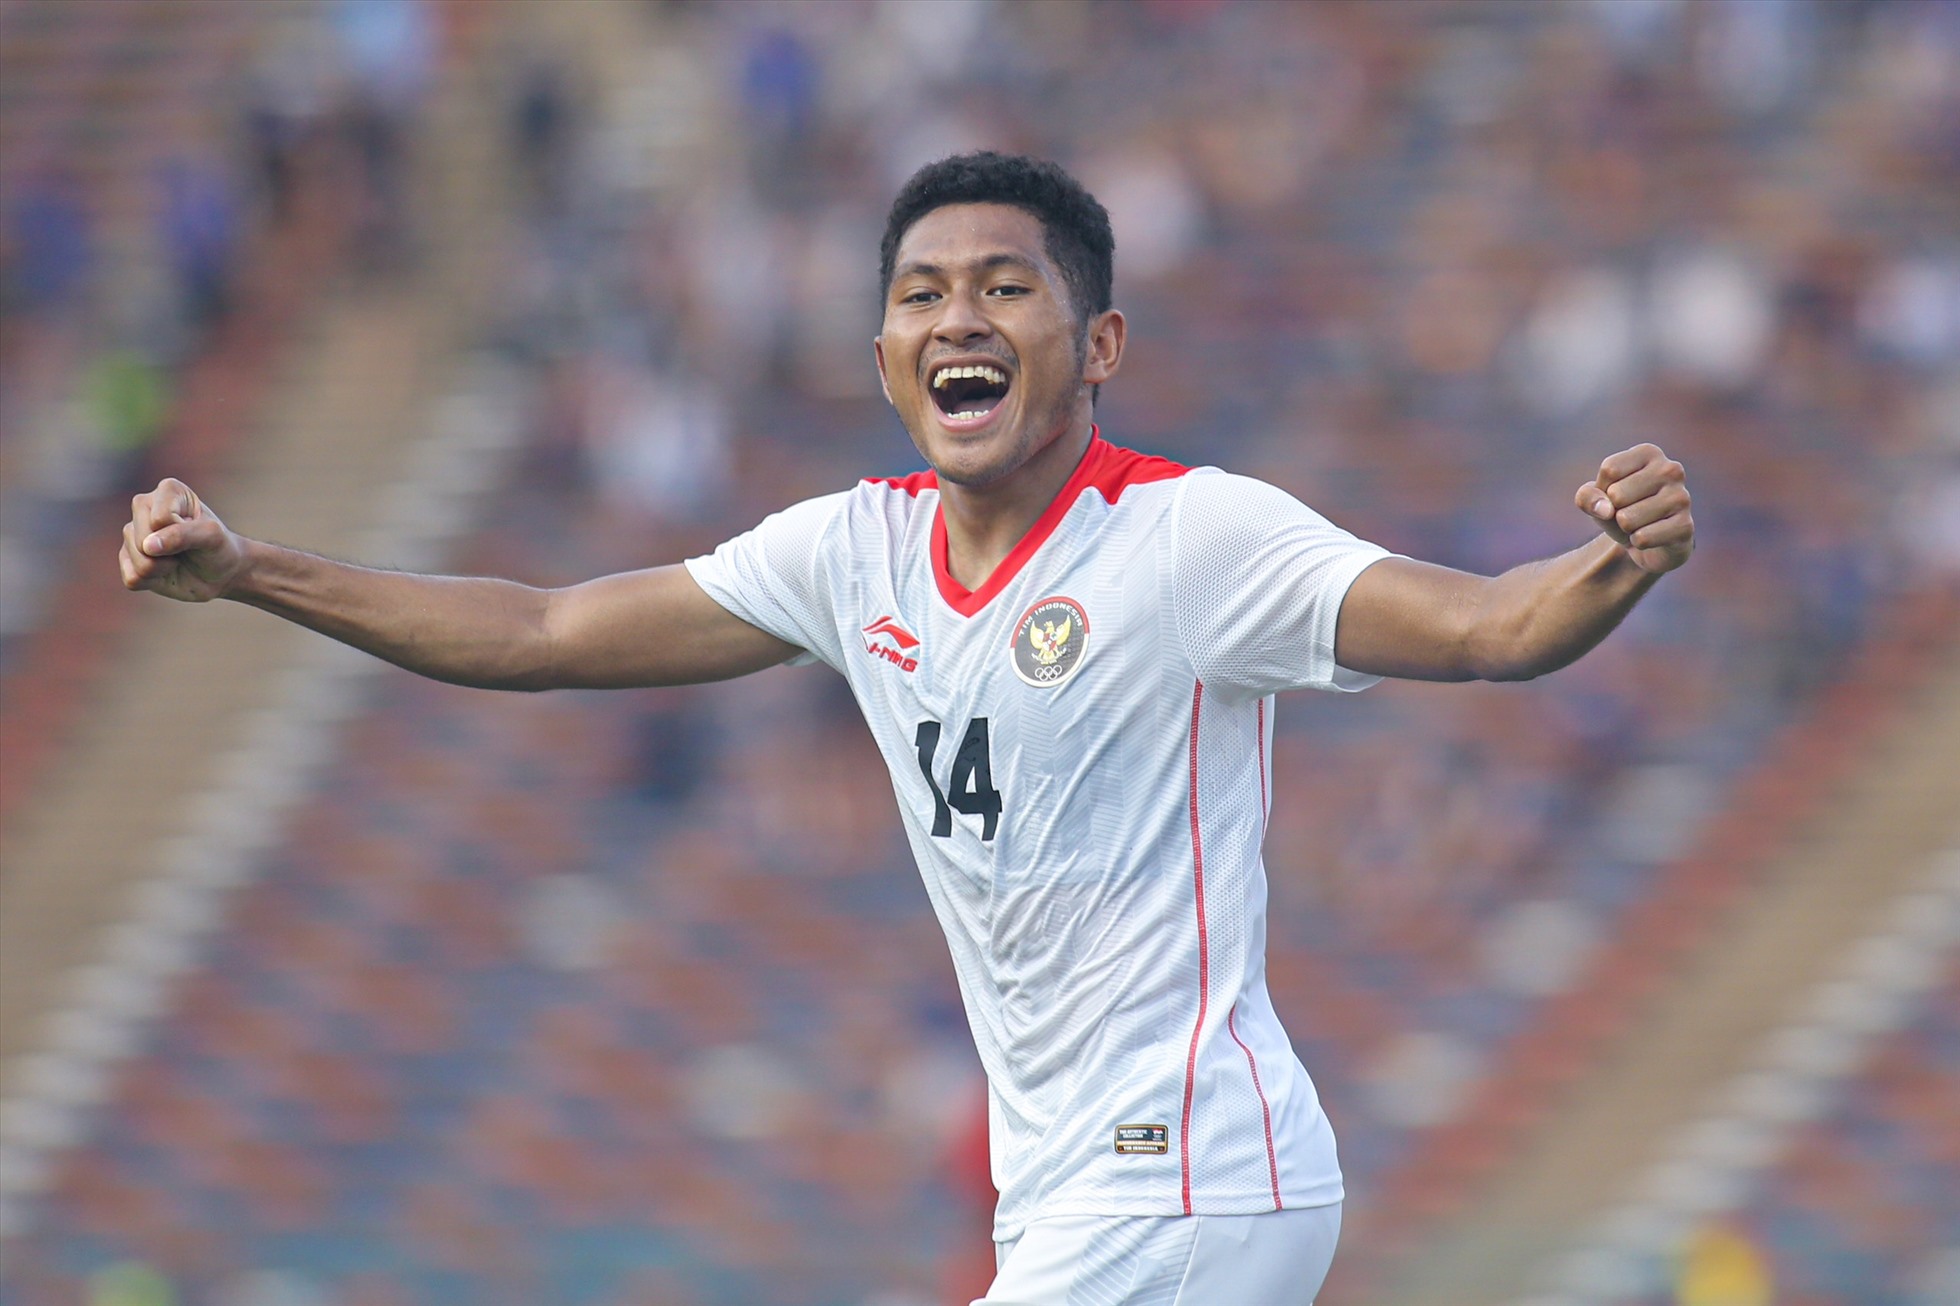 Fajar nâng tỉ số lên 2-0 cho U22 Indonesia. Ảnh: Thanh Vũ